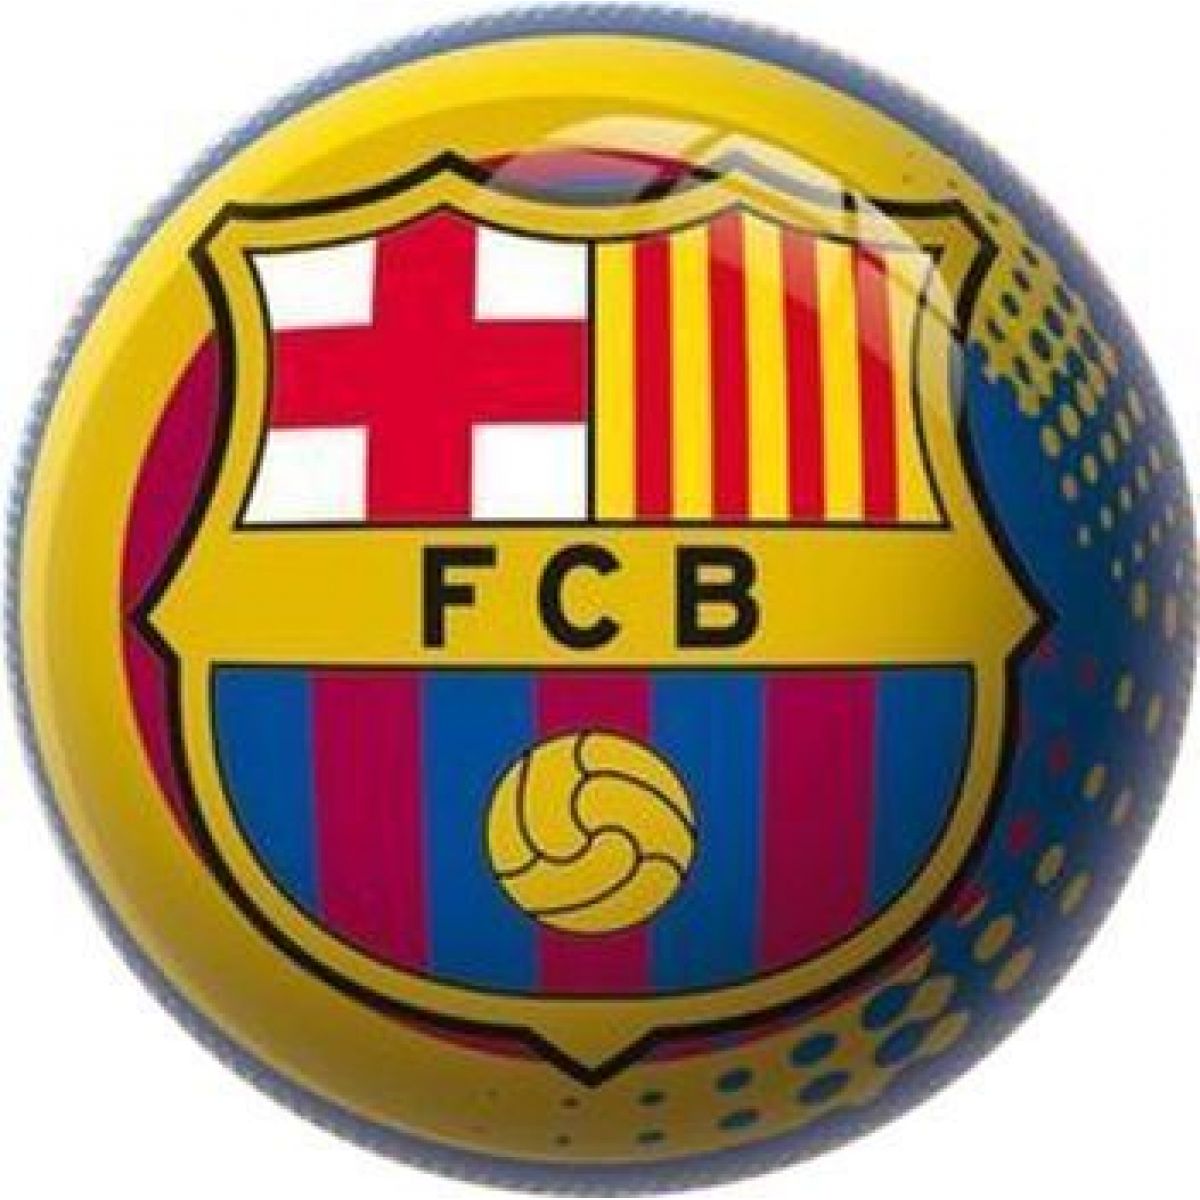 Míč FC Barcelona 15 cm